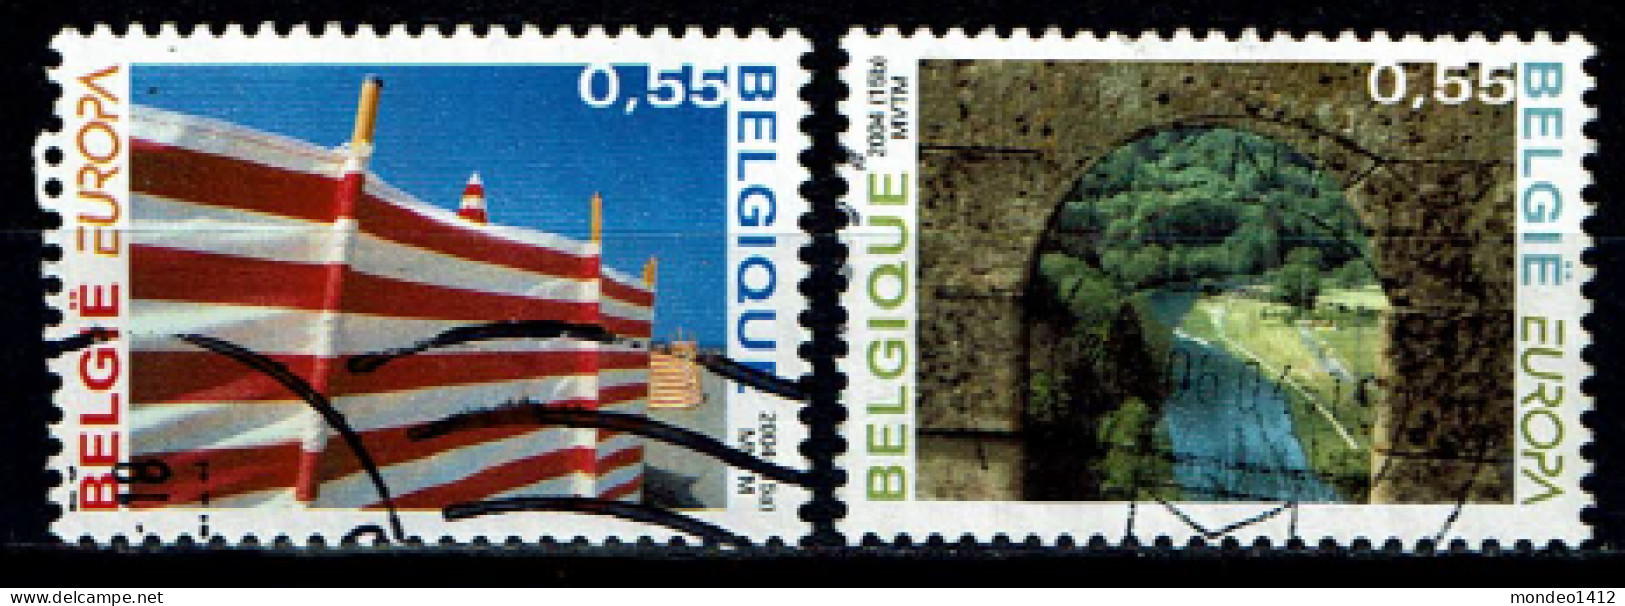 België OBP 3291/3292 - EUROPA Stamps - Holidays - Usados